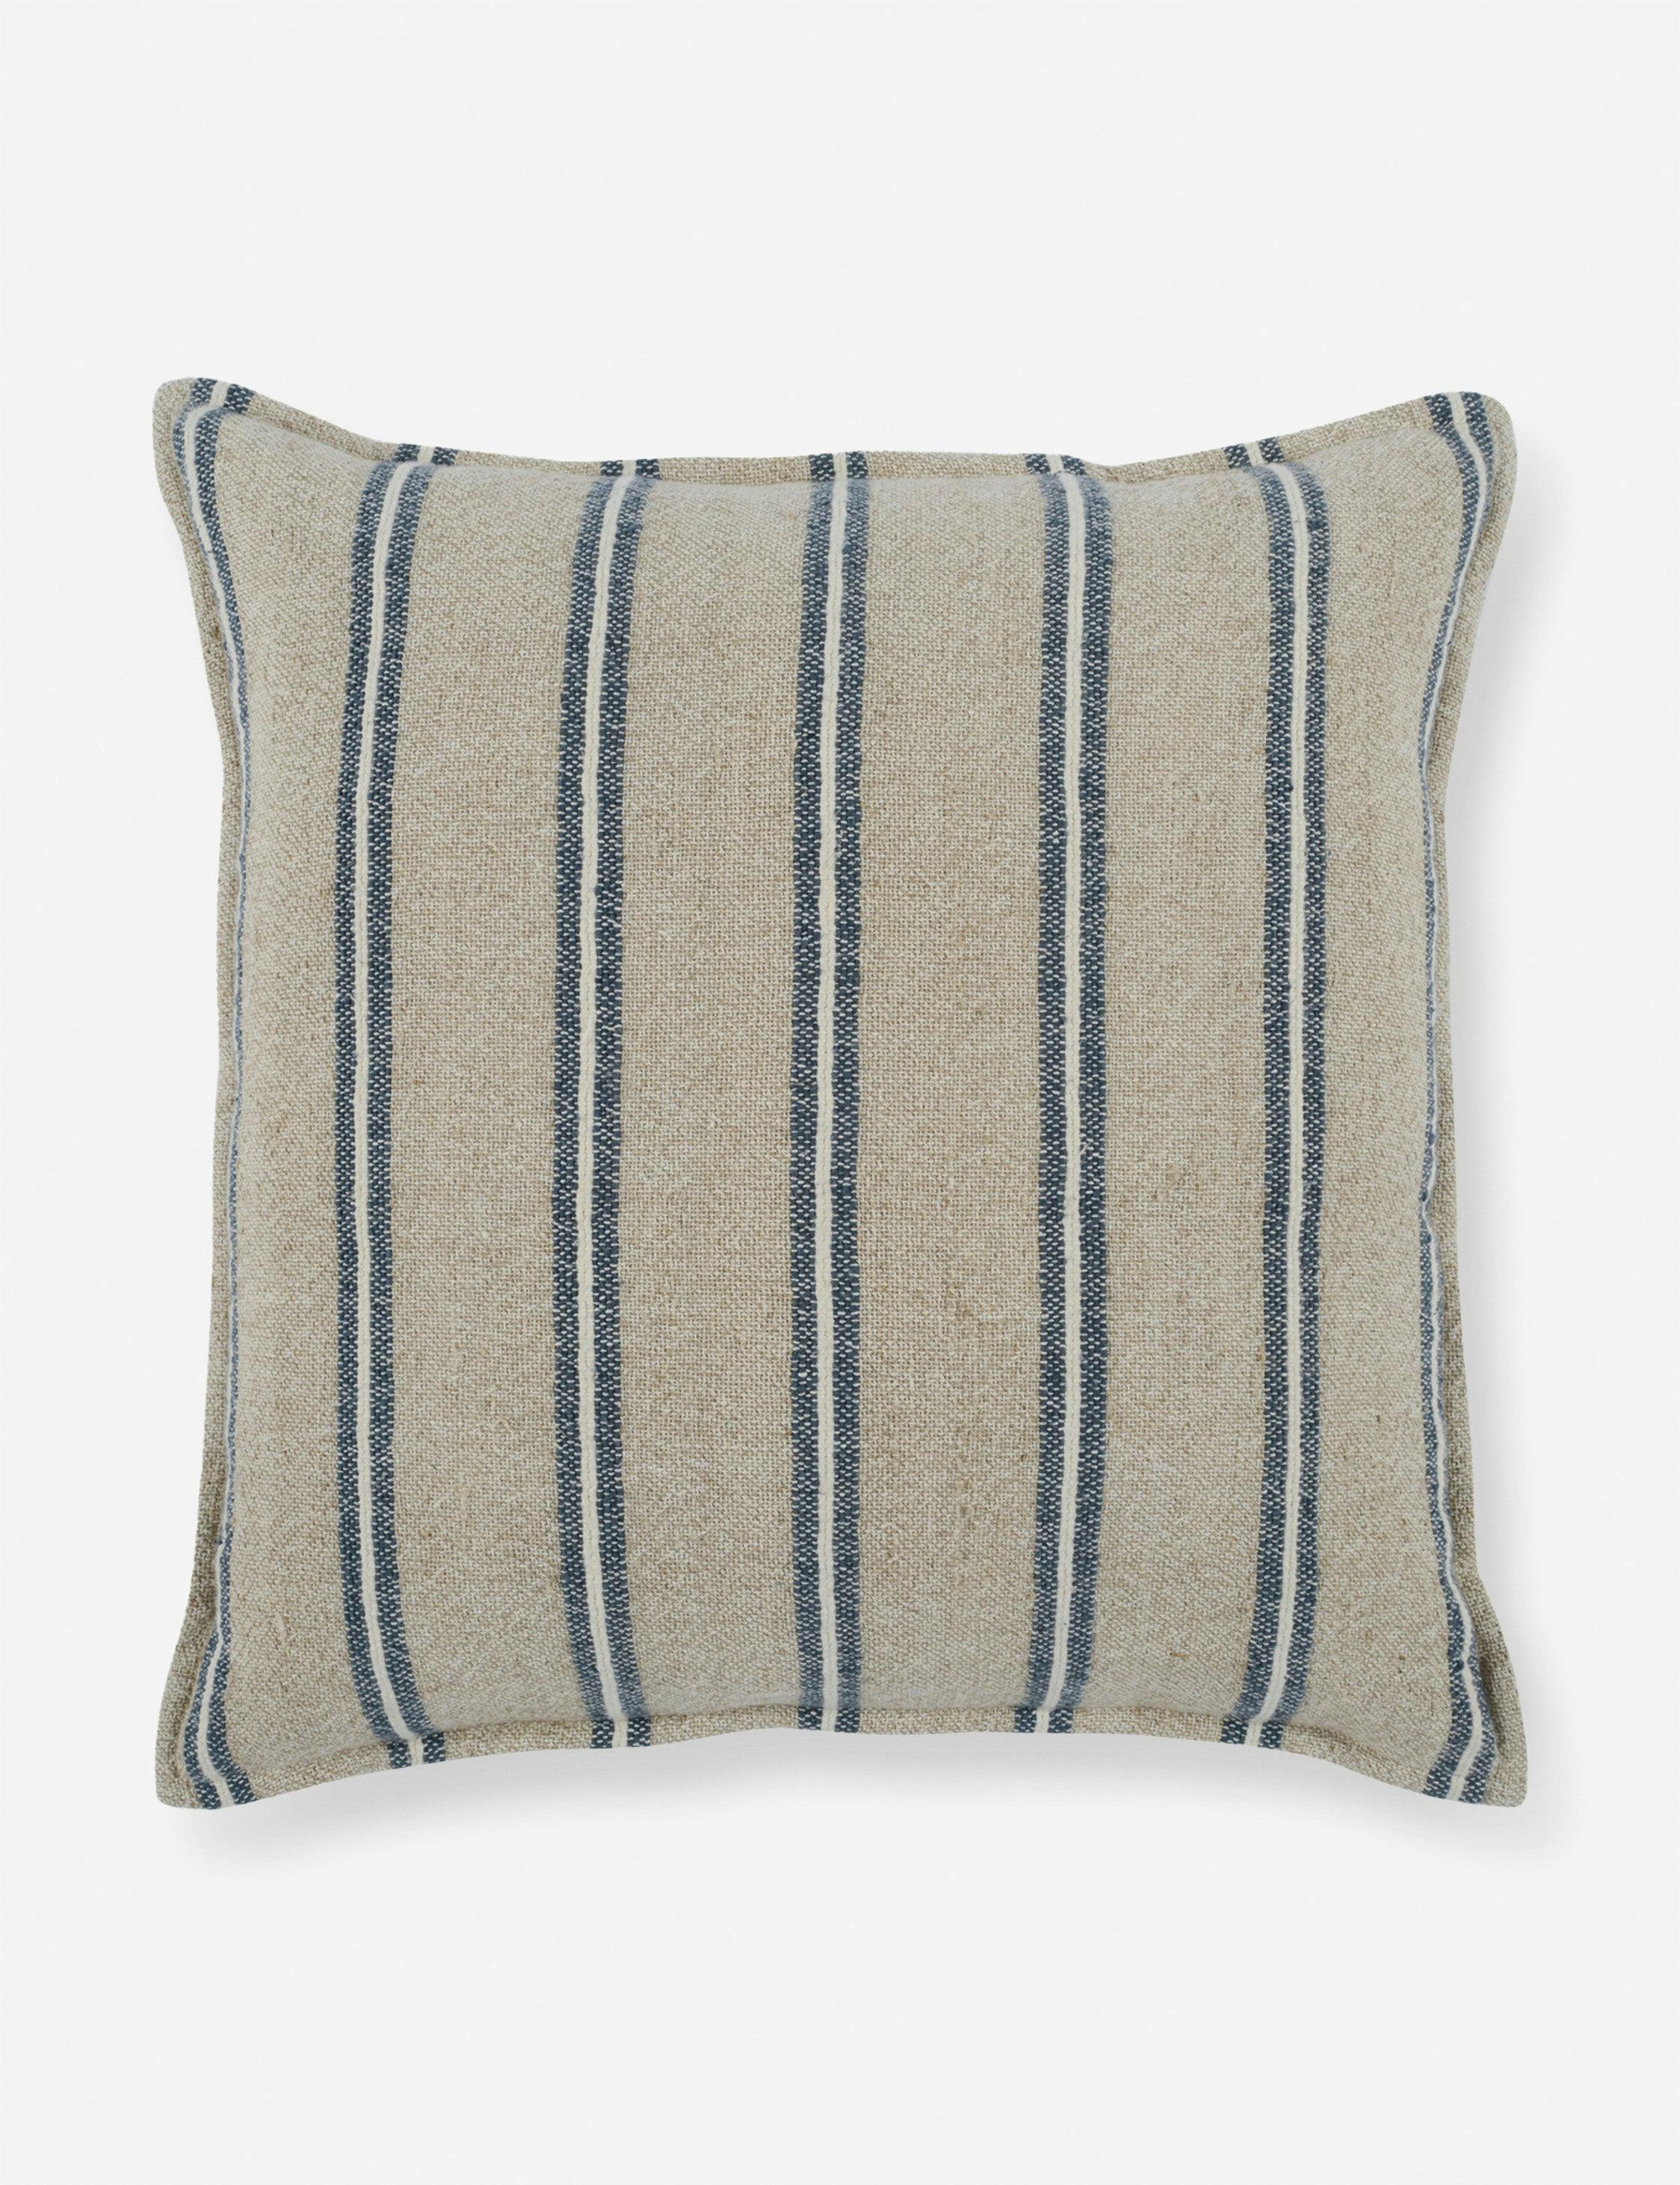 Coastal Charm Blue and White Striped Linen-Cotton 26" Throw Pillow